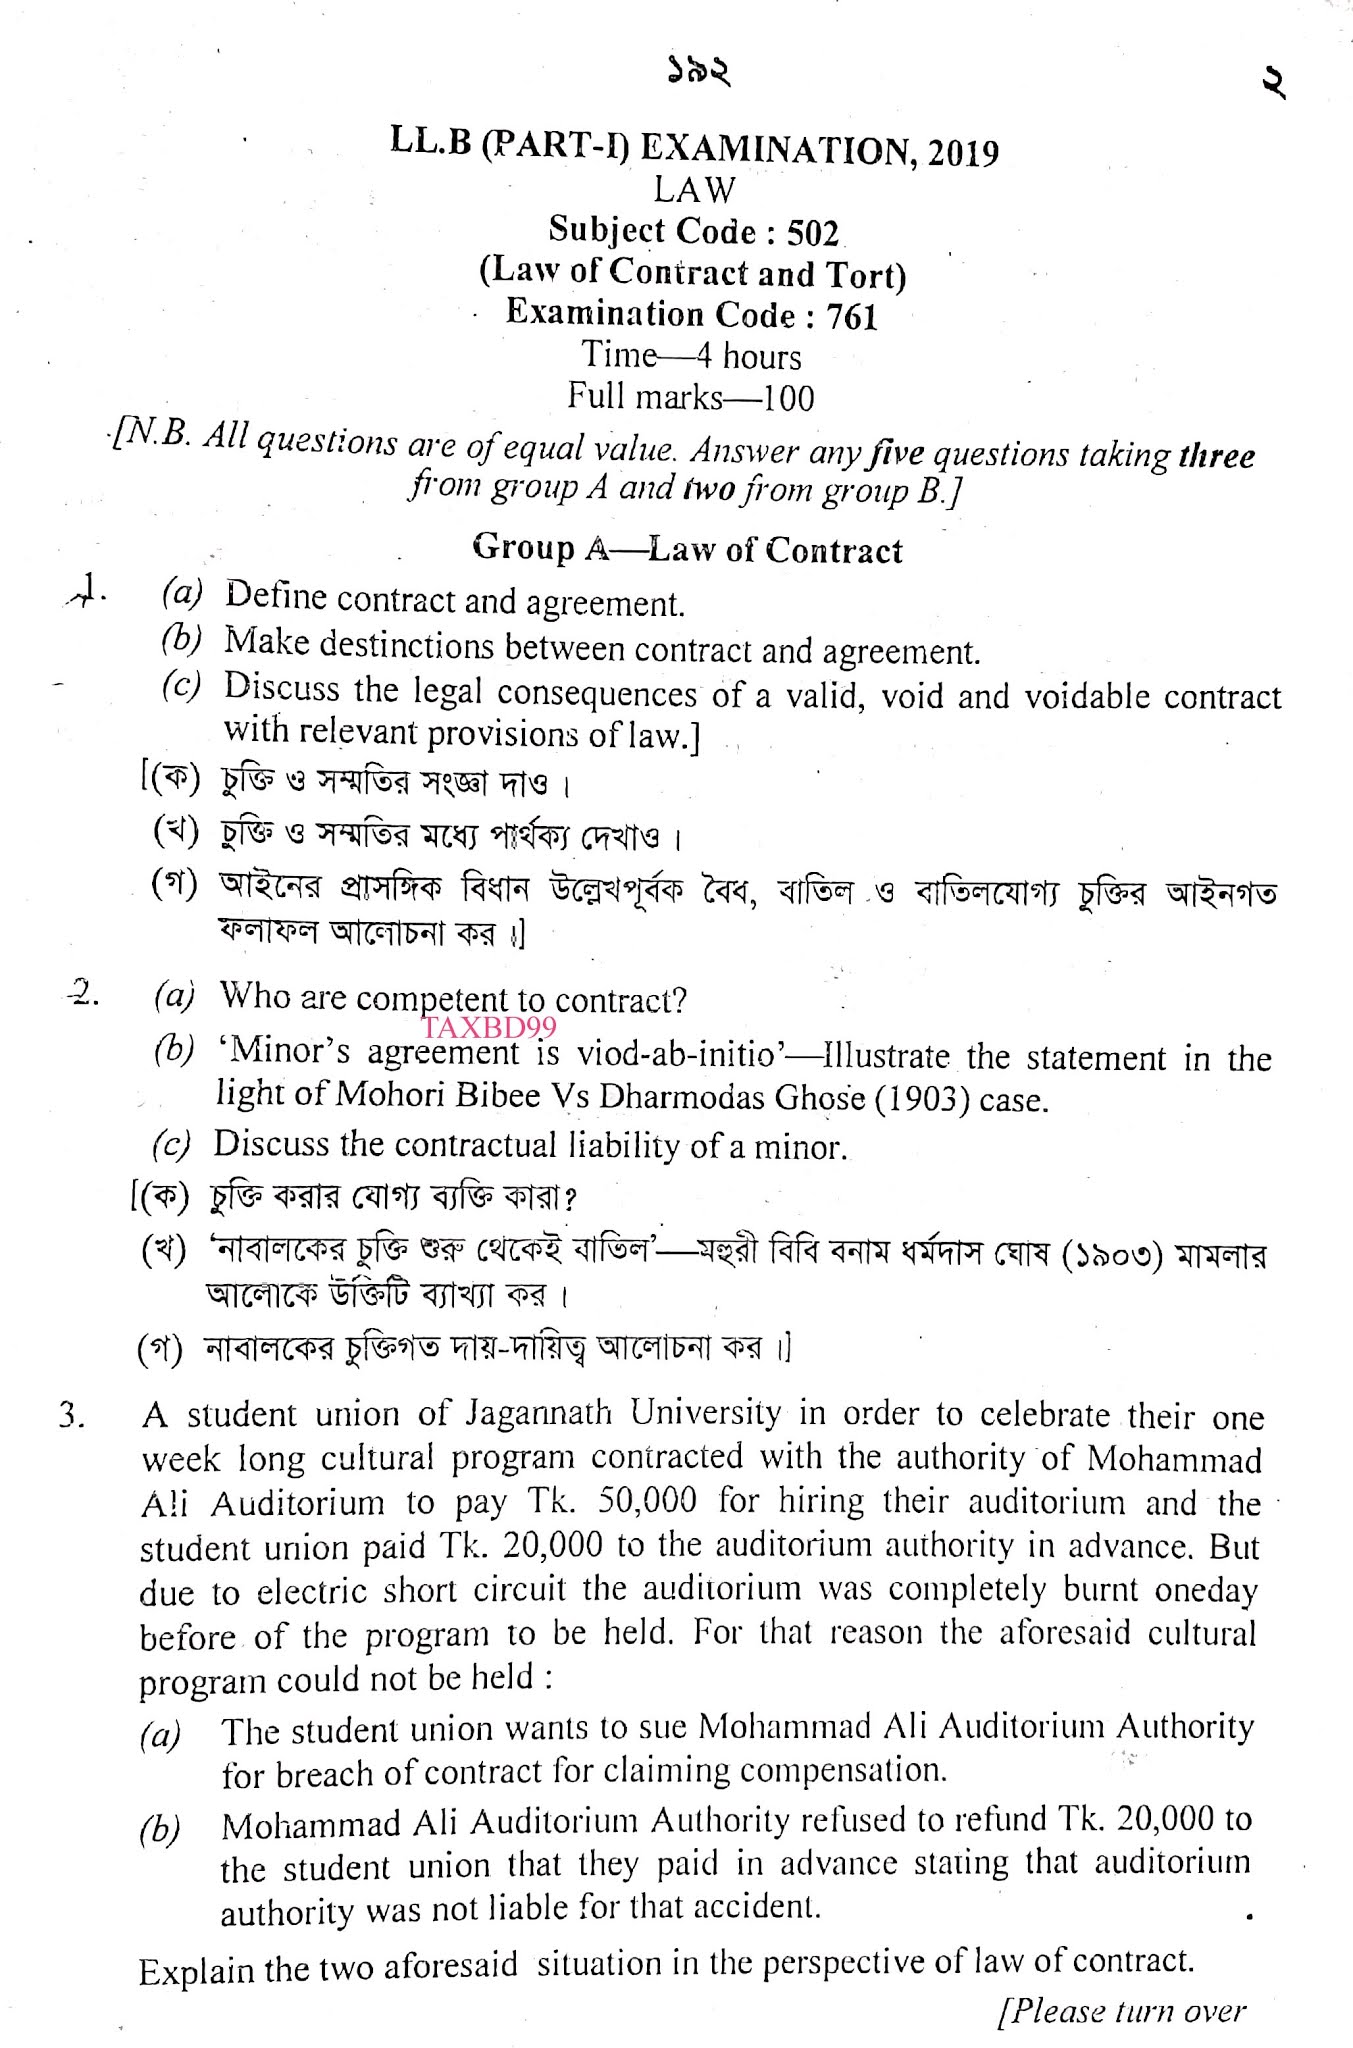 LLB Part-1 Question Paper 2019 এলএলবি (পার্ট-1) পরীক্ষা- ২০১৯ এর প্রশ্ন